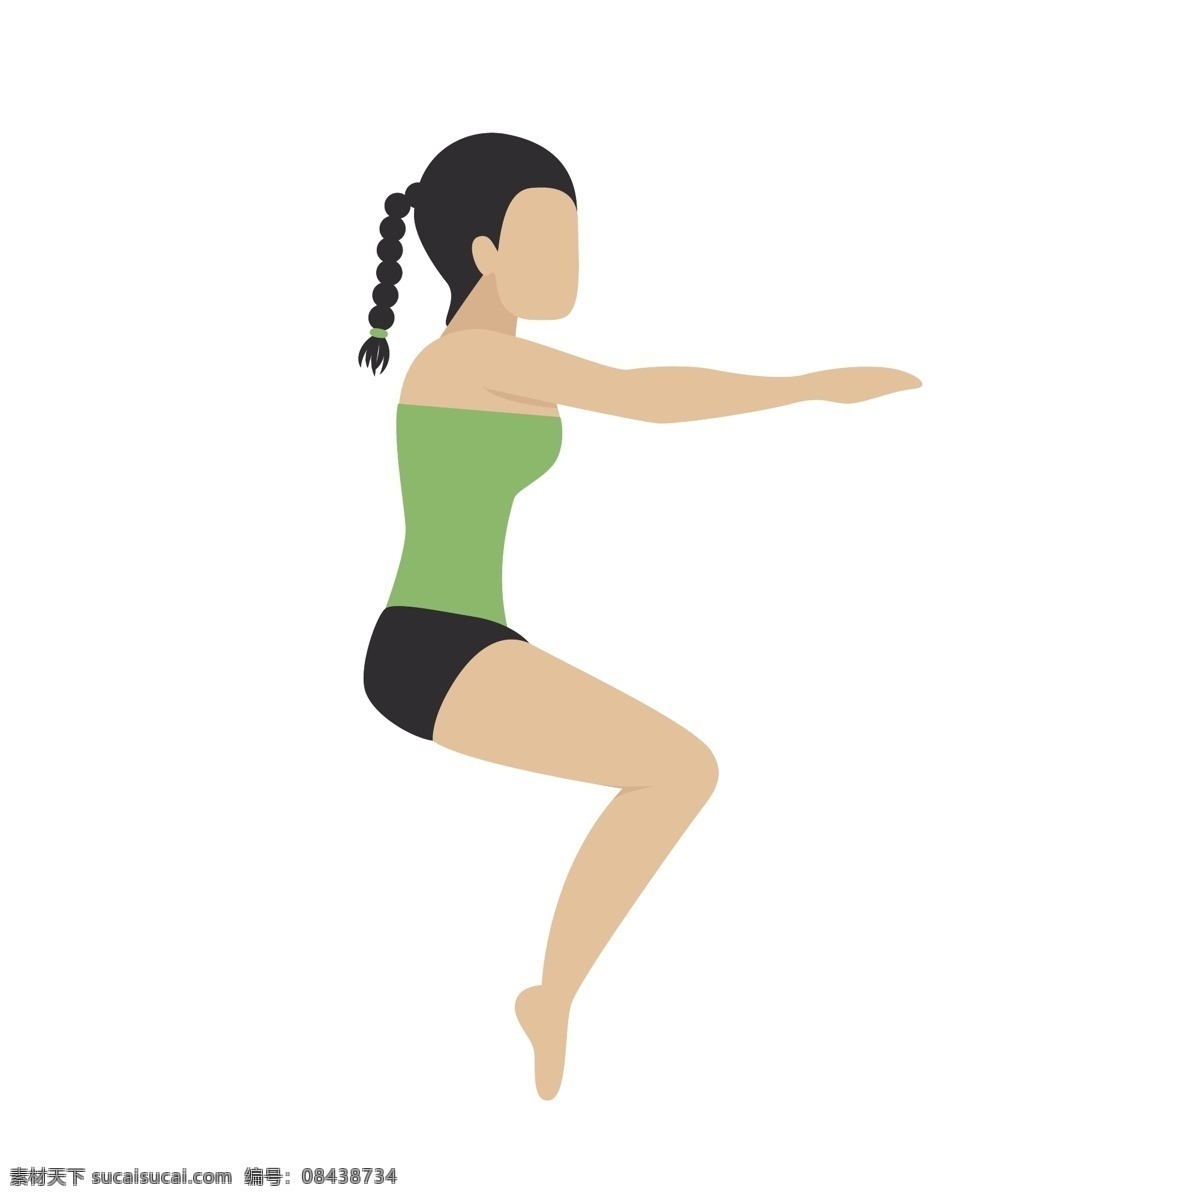 瑜伽 蹲 式 姿势 矢量 瑜伽姿势 瑜伽动作 动作姿势 卡通 卡通瑜伽 卡通女人 瑜伽女人 瑜伽运动 体育运动